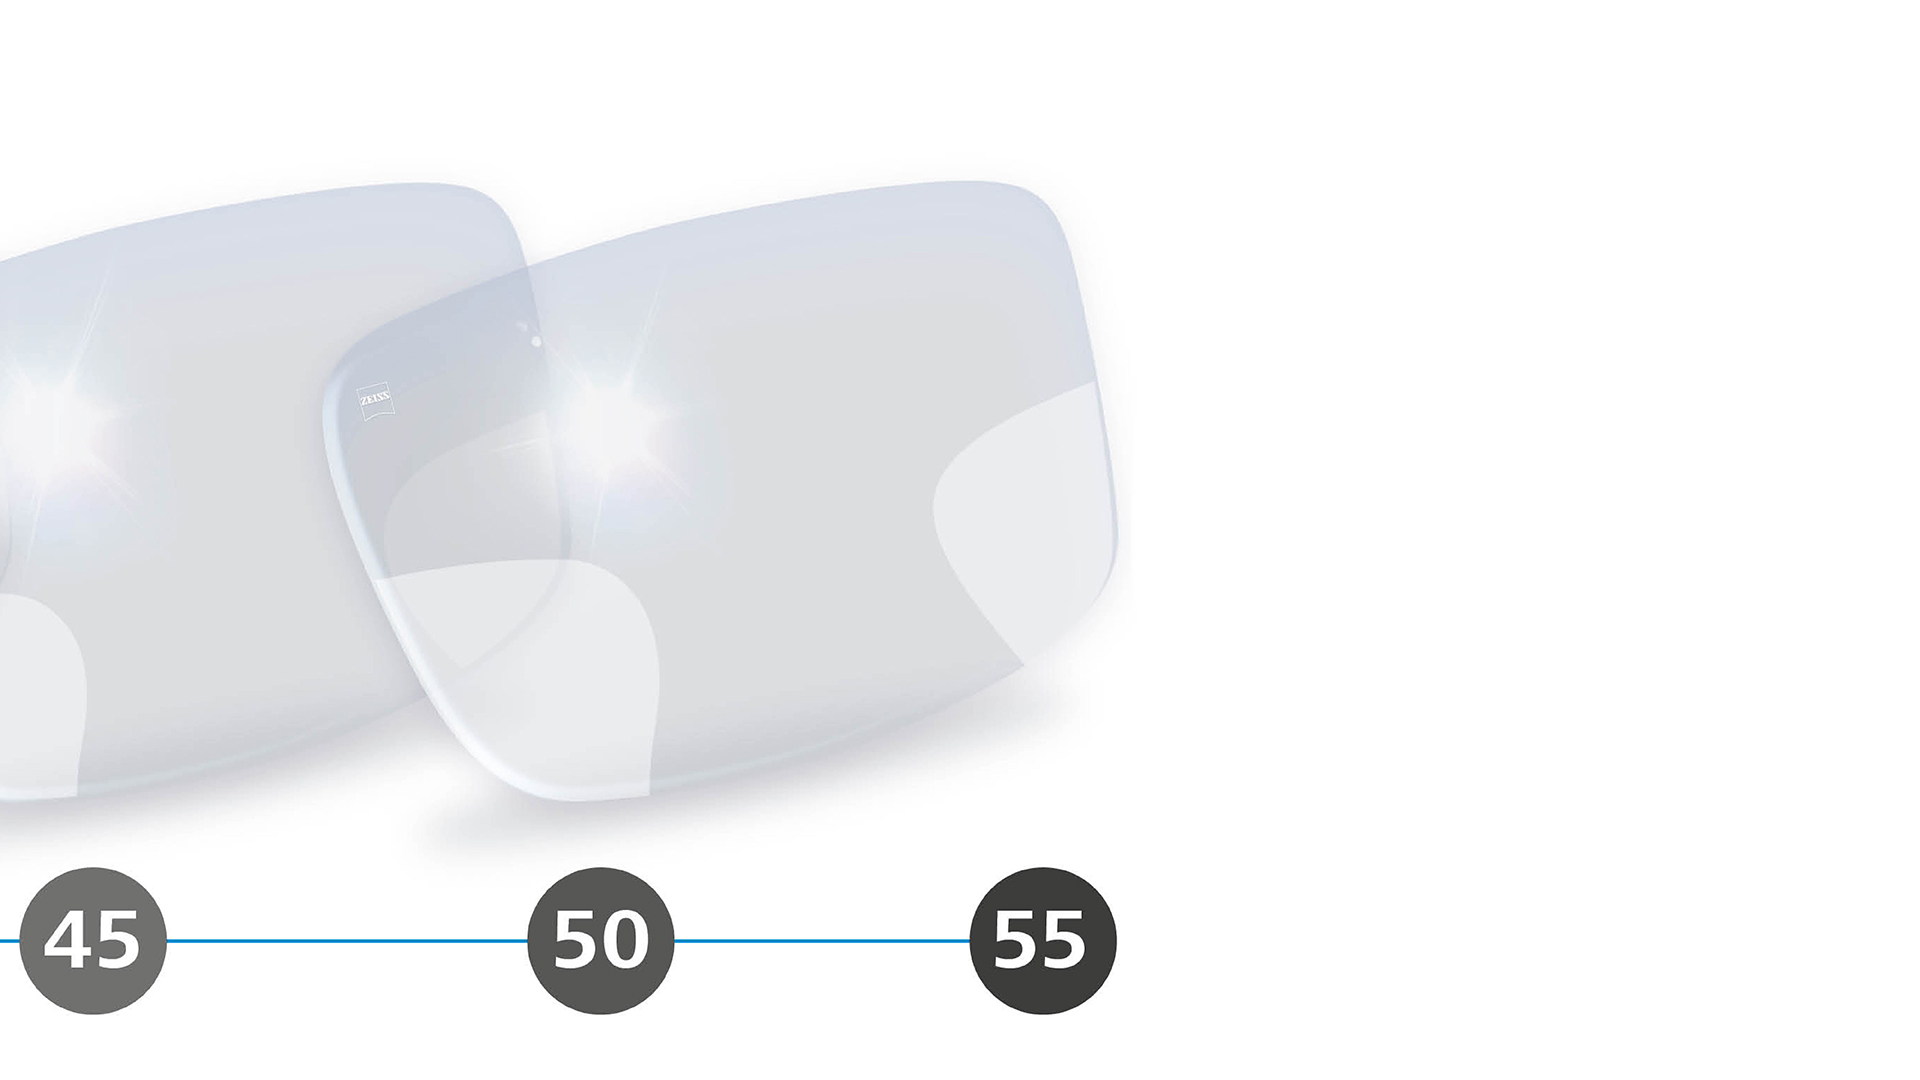 Ilustração em 3D de lentes progressivas com zonas periféricas desfocadas para a partir dos 40 anos.